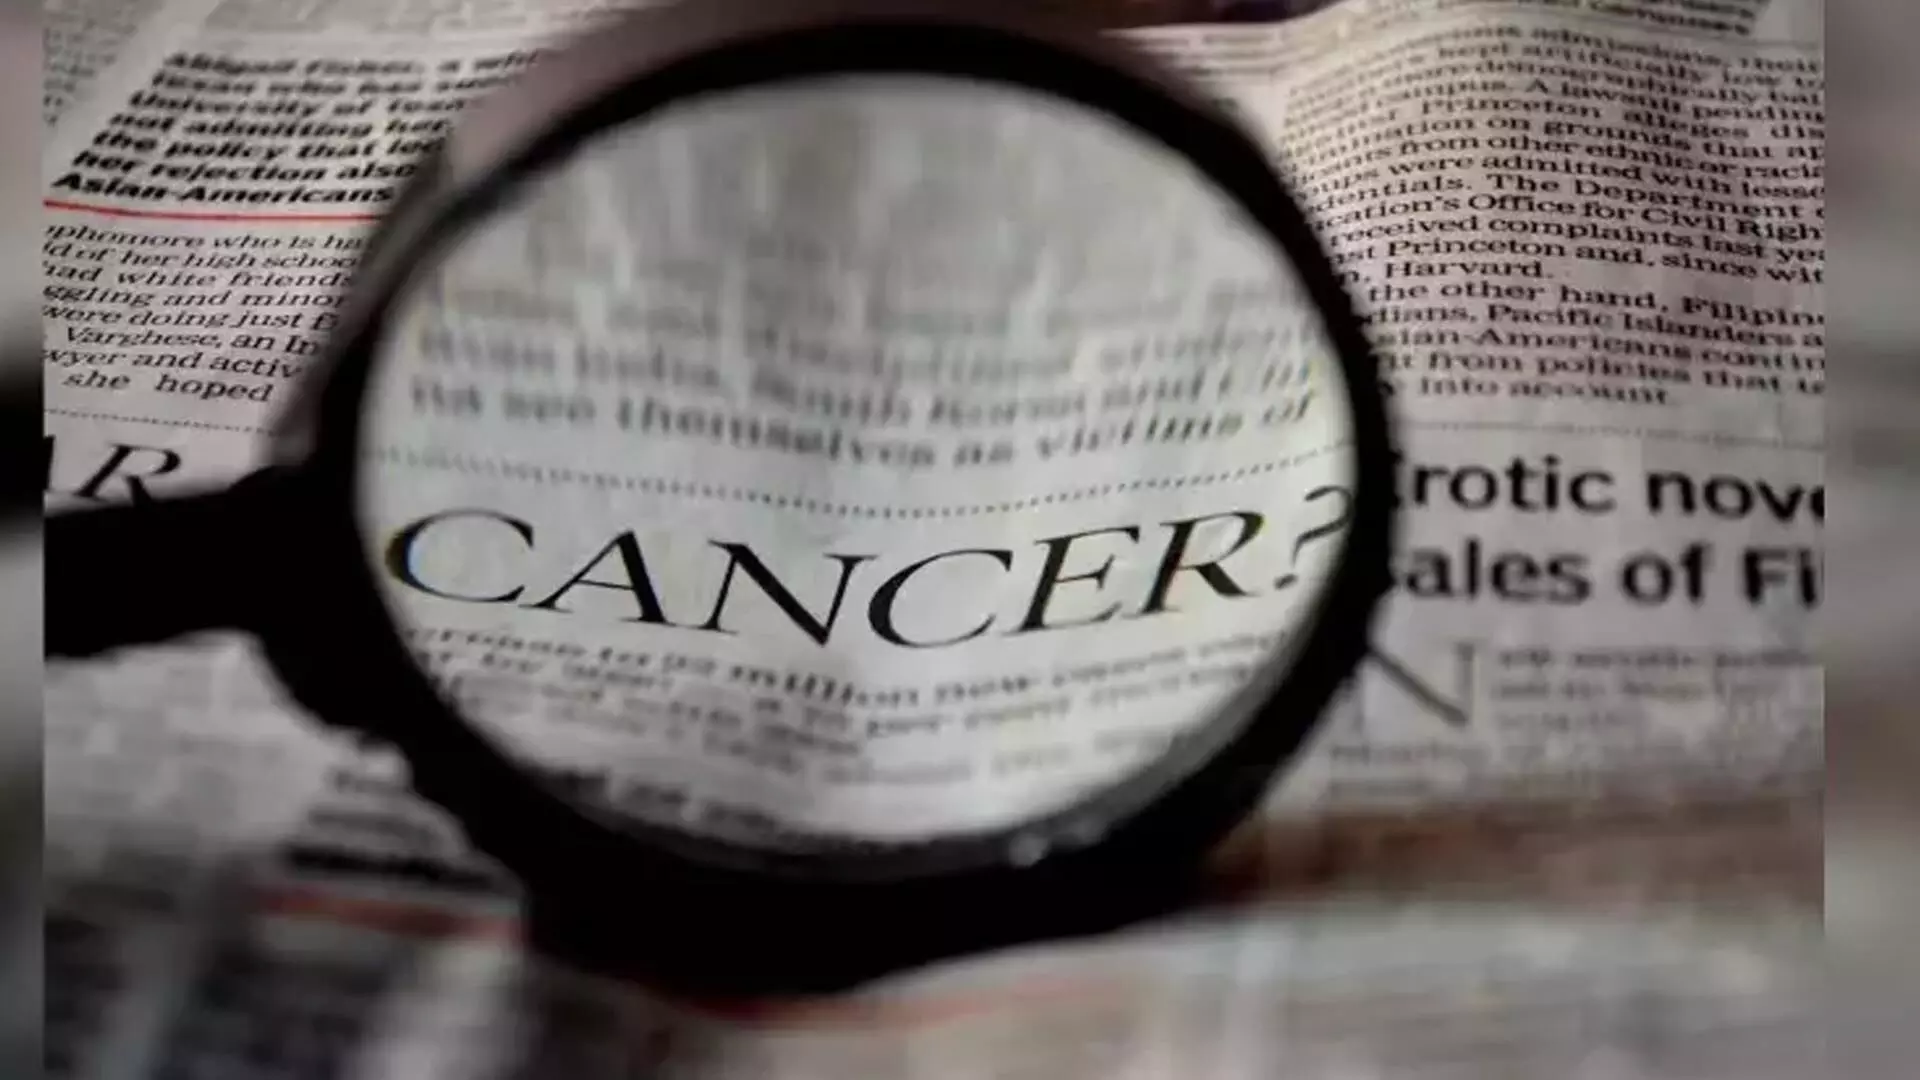 साधारण मौखिक कुल्ला गैस्ट्रिक कैंसर का शीघ्र लगा सकता है पता